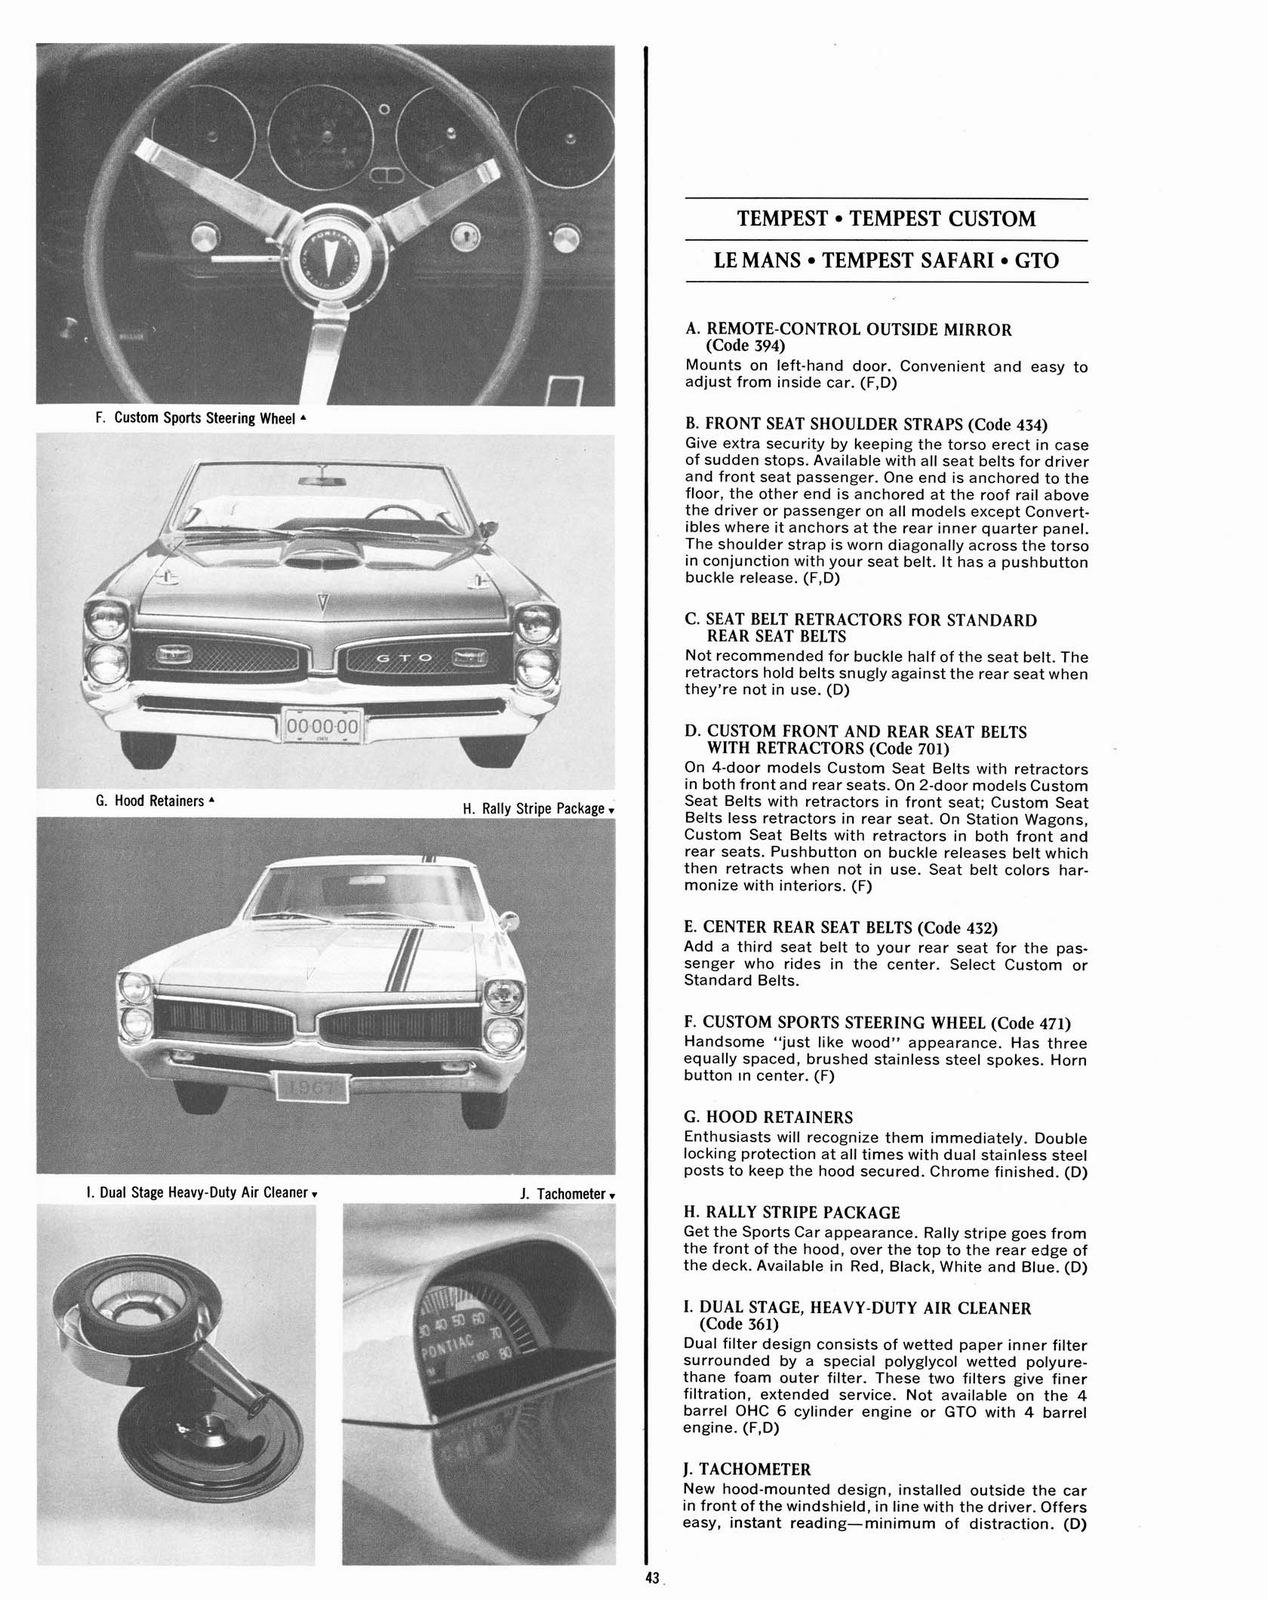 n_1967 Pontiac Accessories-43.jpg